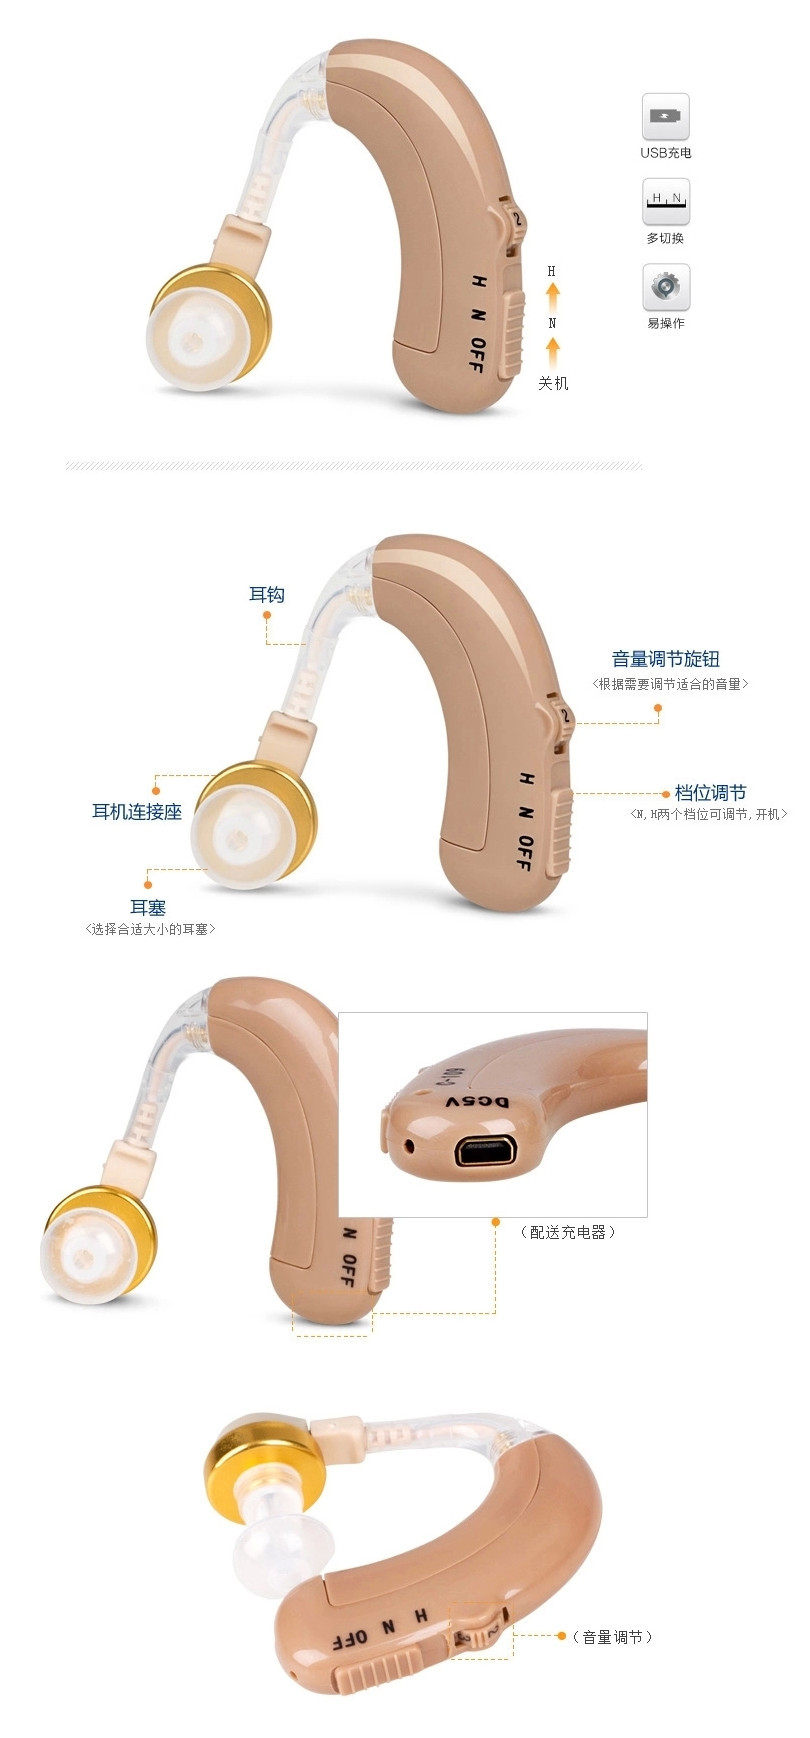 申瑞助听器C-122产品结构及细节展示